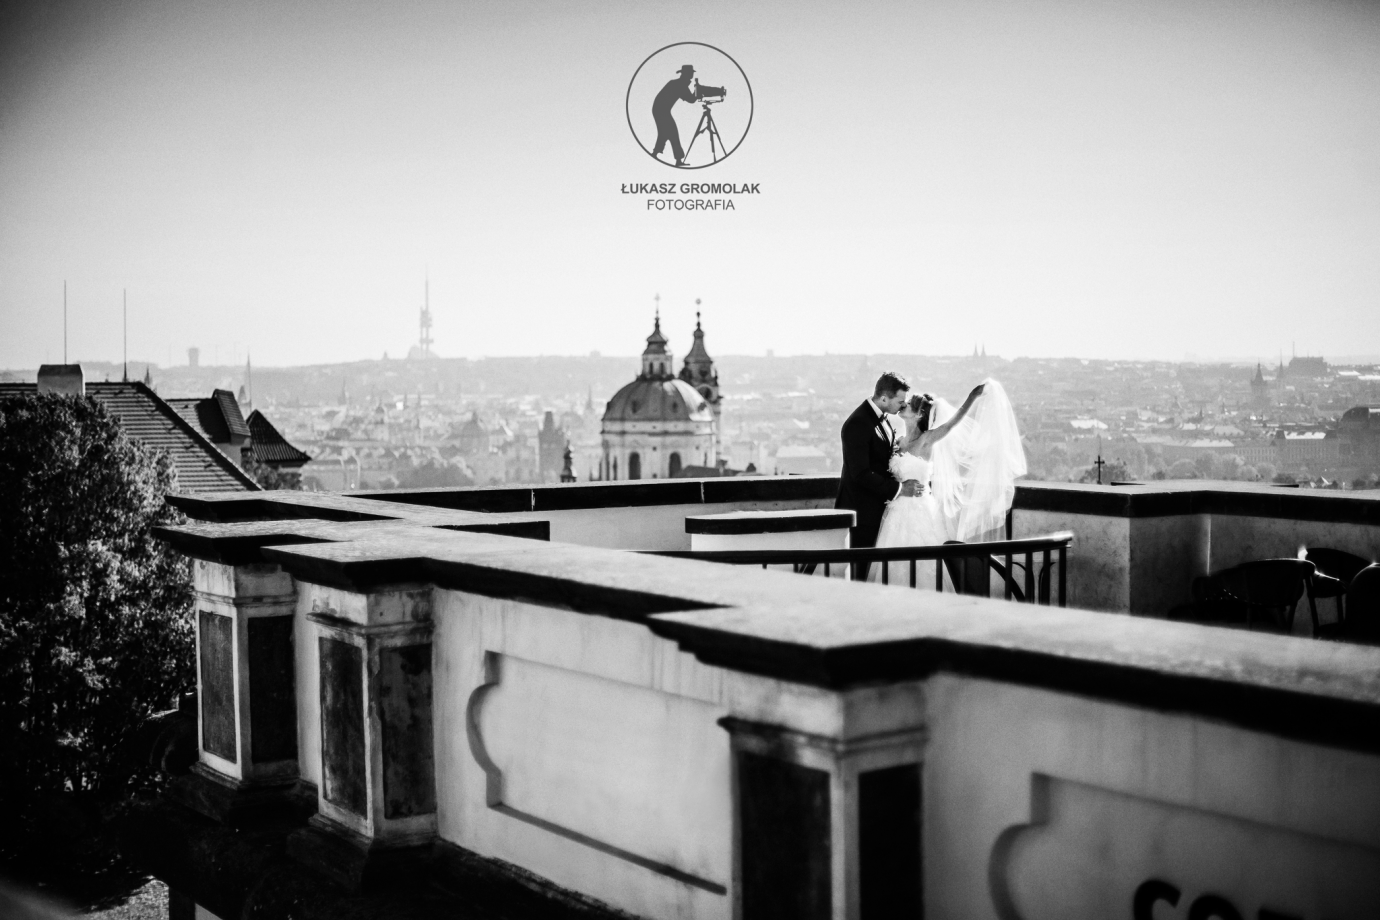 fotograf wroclaw lukasz-gromolak portfolio zdjecia slubne inspiracje wesele plener slubny sesja slubna